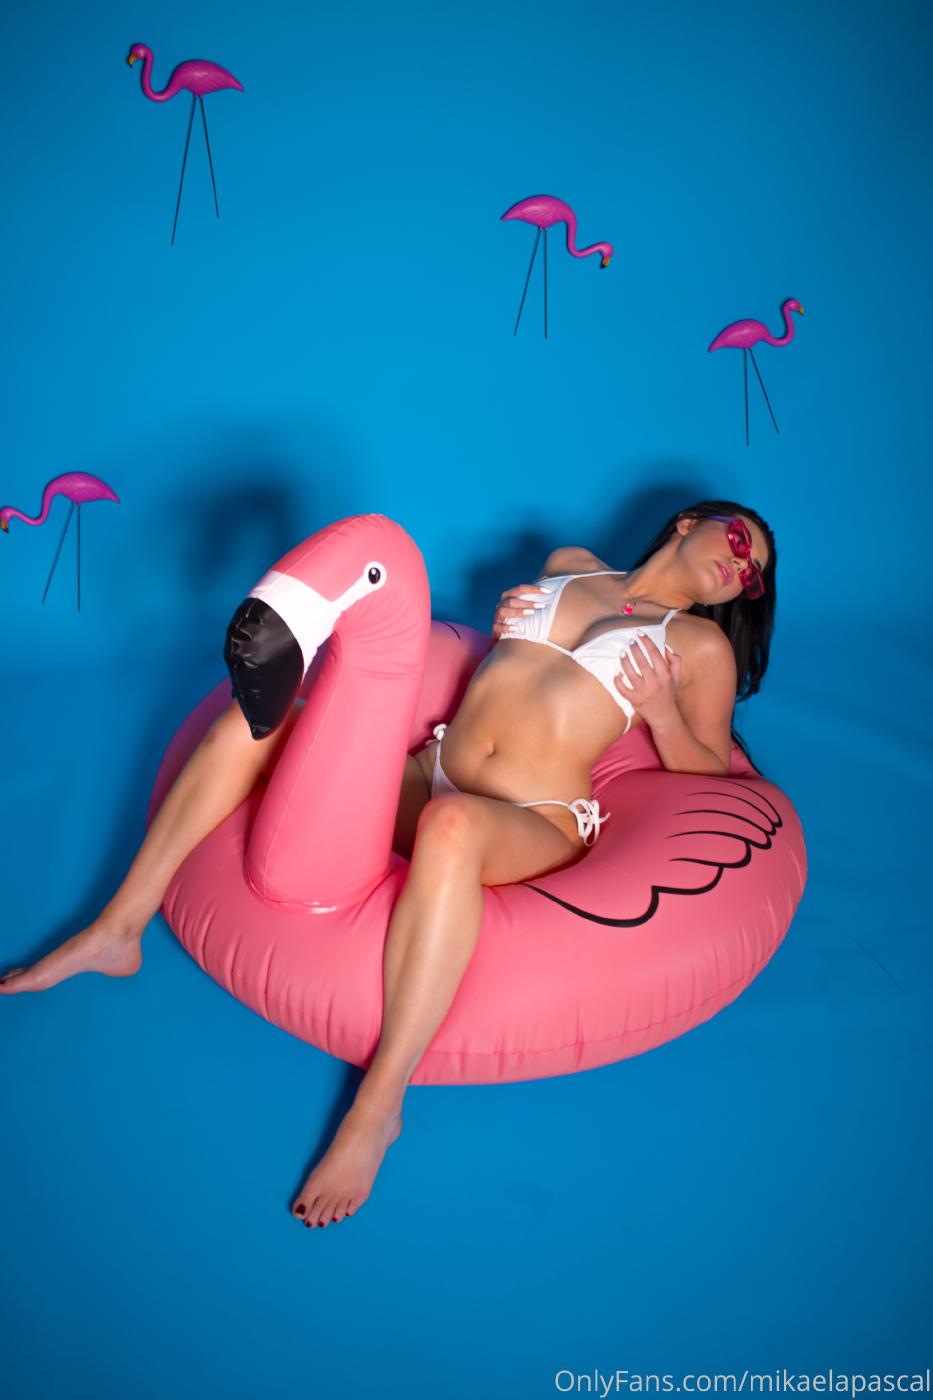 mikaela pascal flamingo onlyfans set leaked YLQZRY